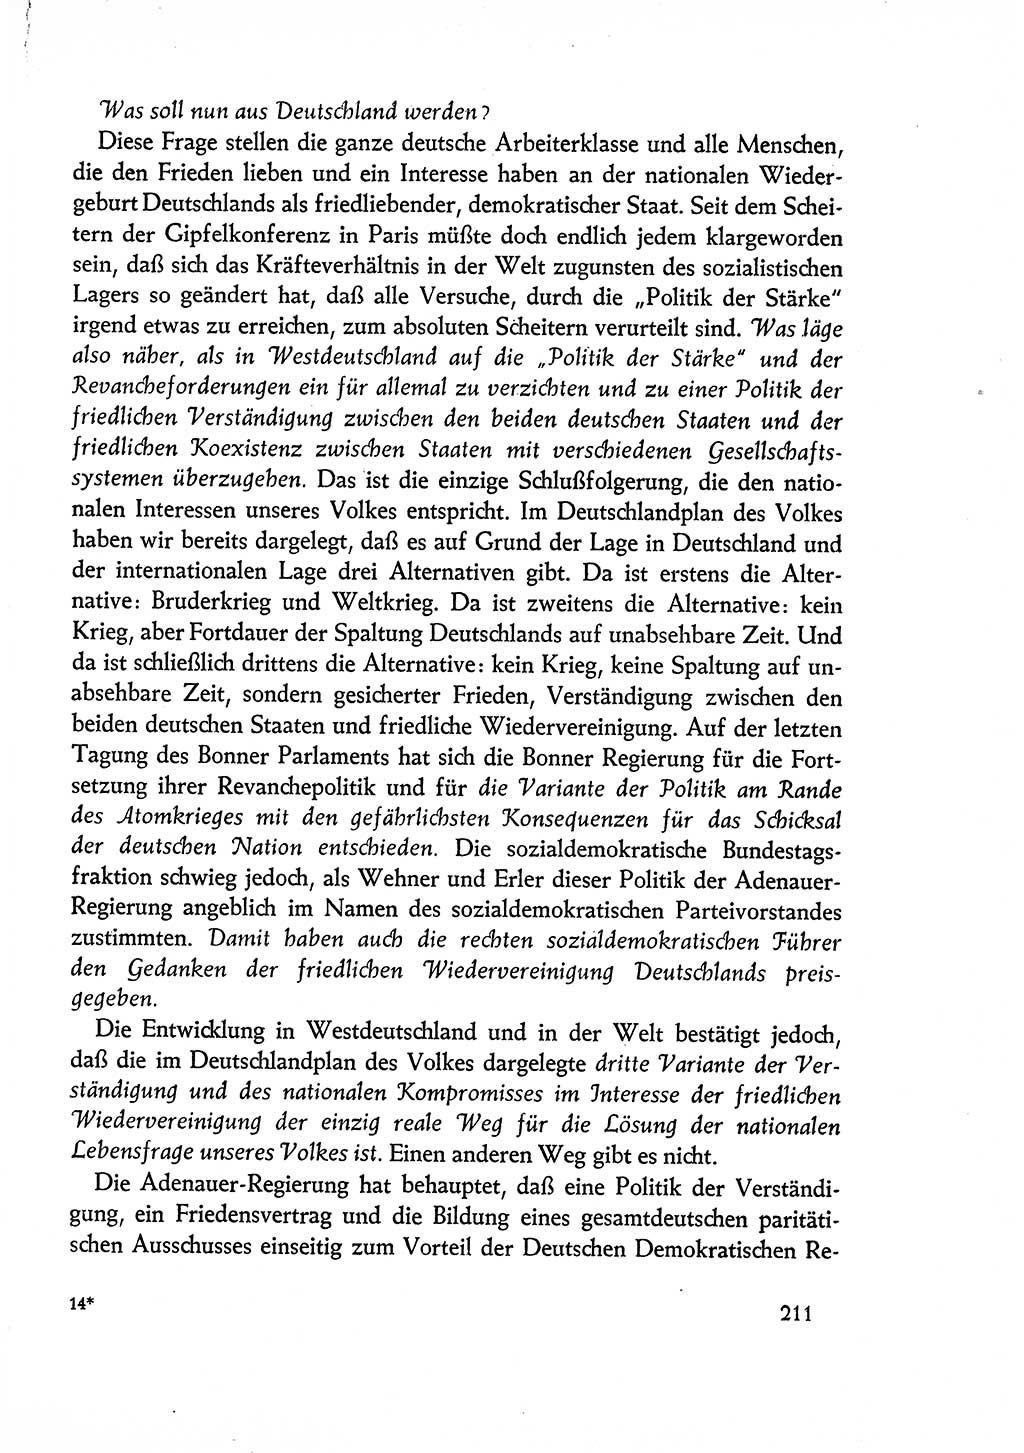 Dokumente der Sozialistischen Einheitspartei Deutschlands (SED) [Deutsche Demokratische Republik (DDR)] 1960-1961, Seite 211 (Dok. SED DDR 1960-1961, S. 211)